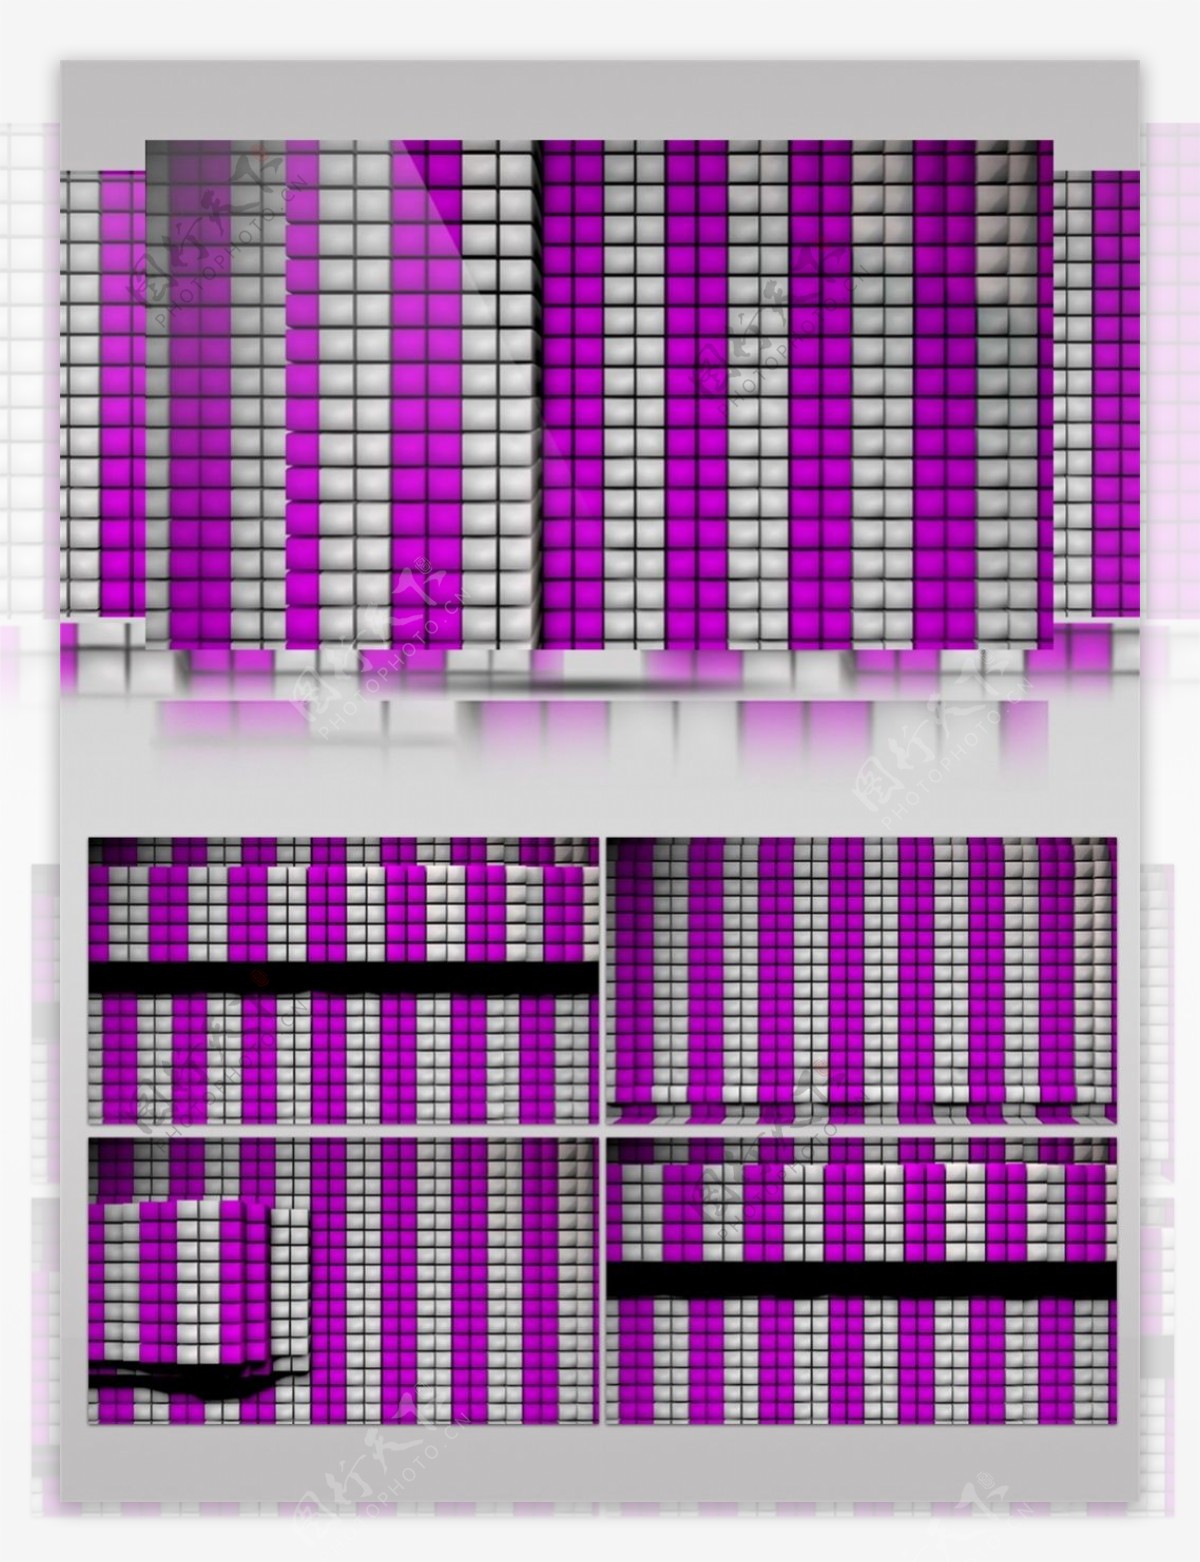 紫光动感方块视频素材